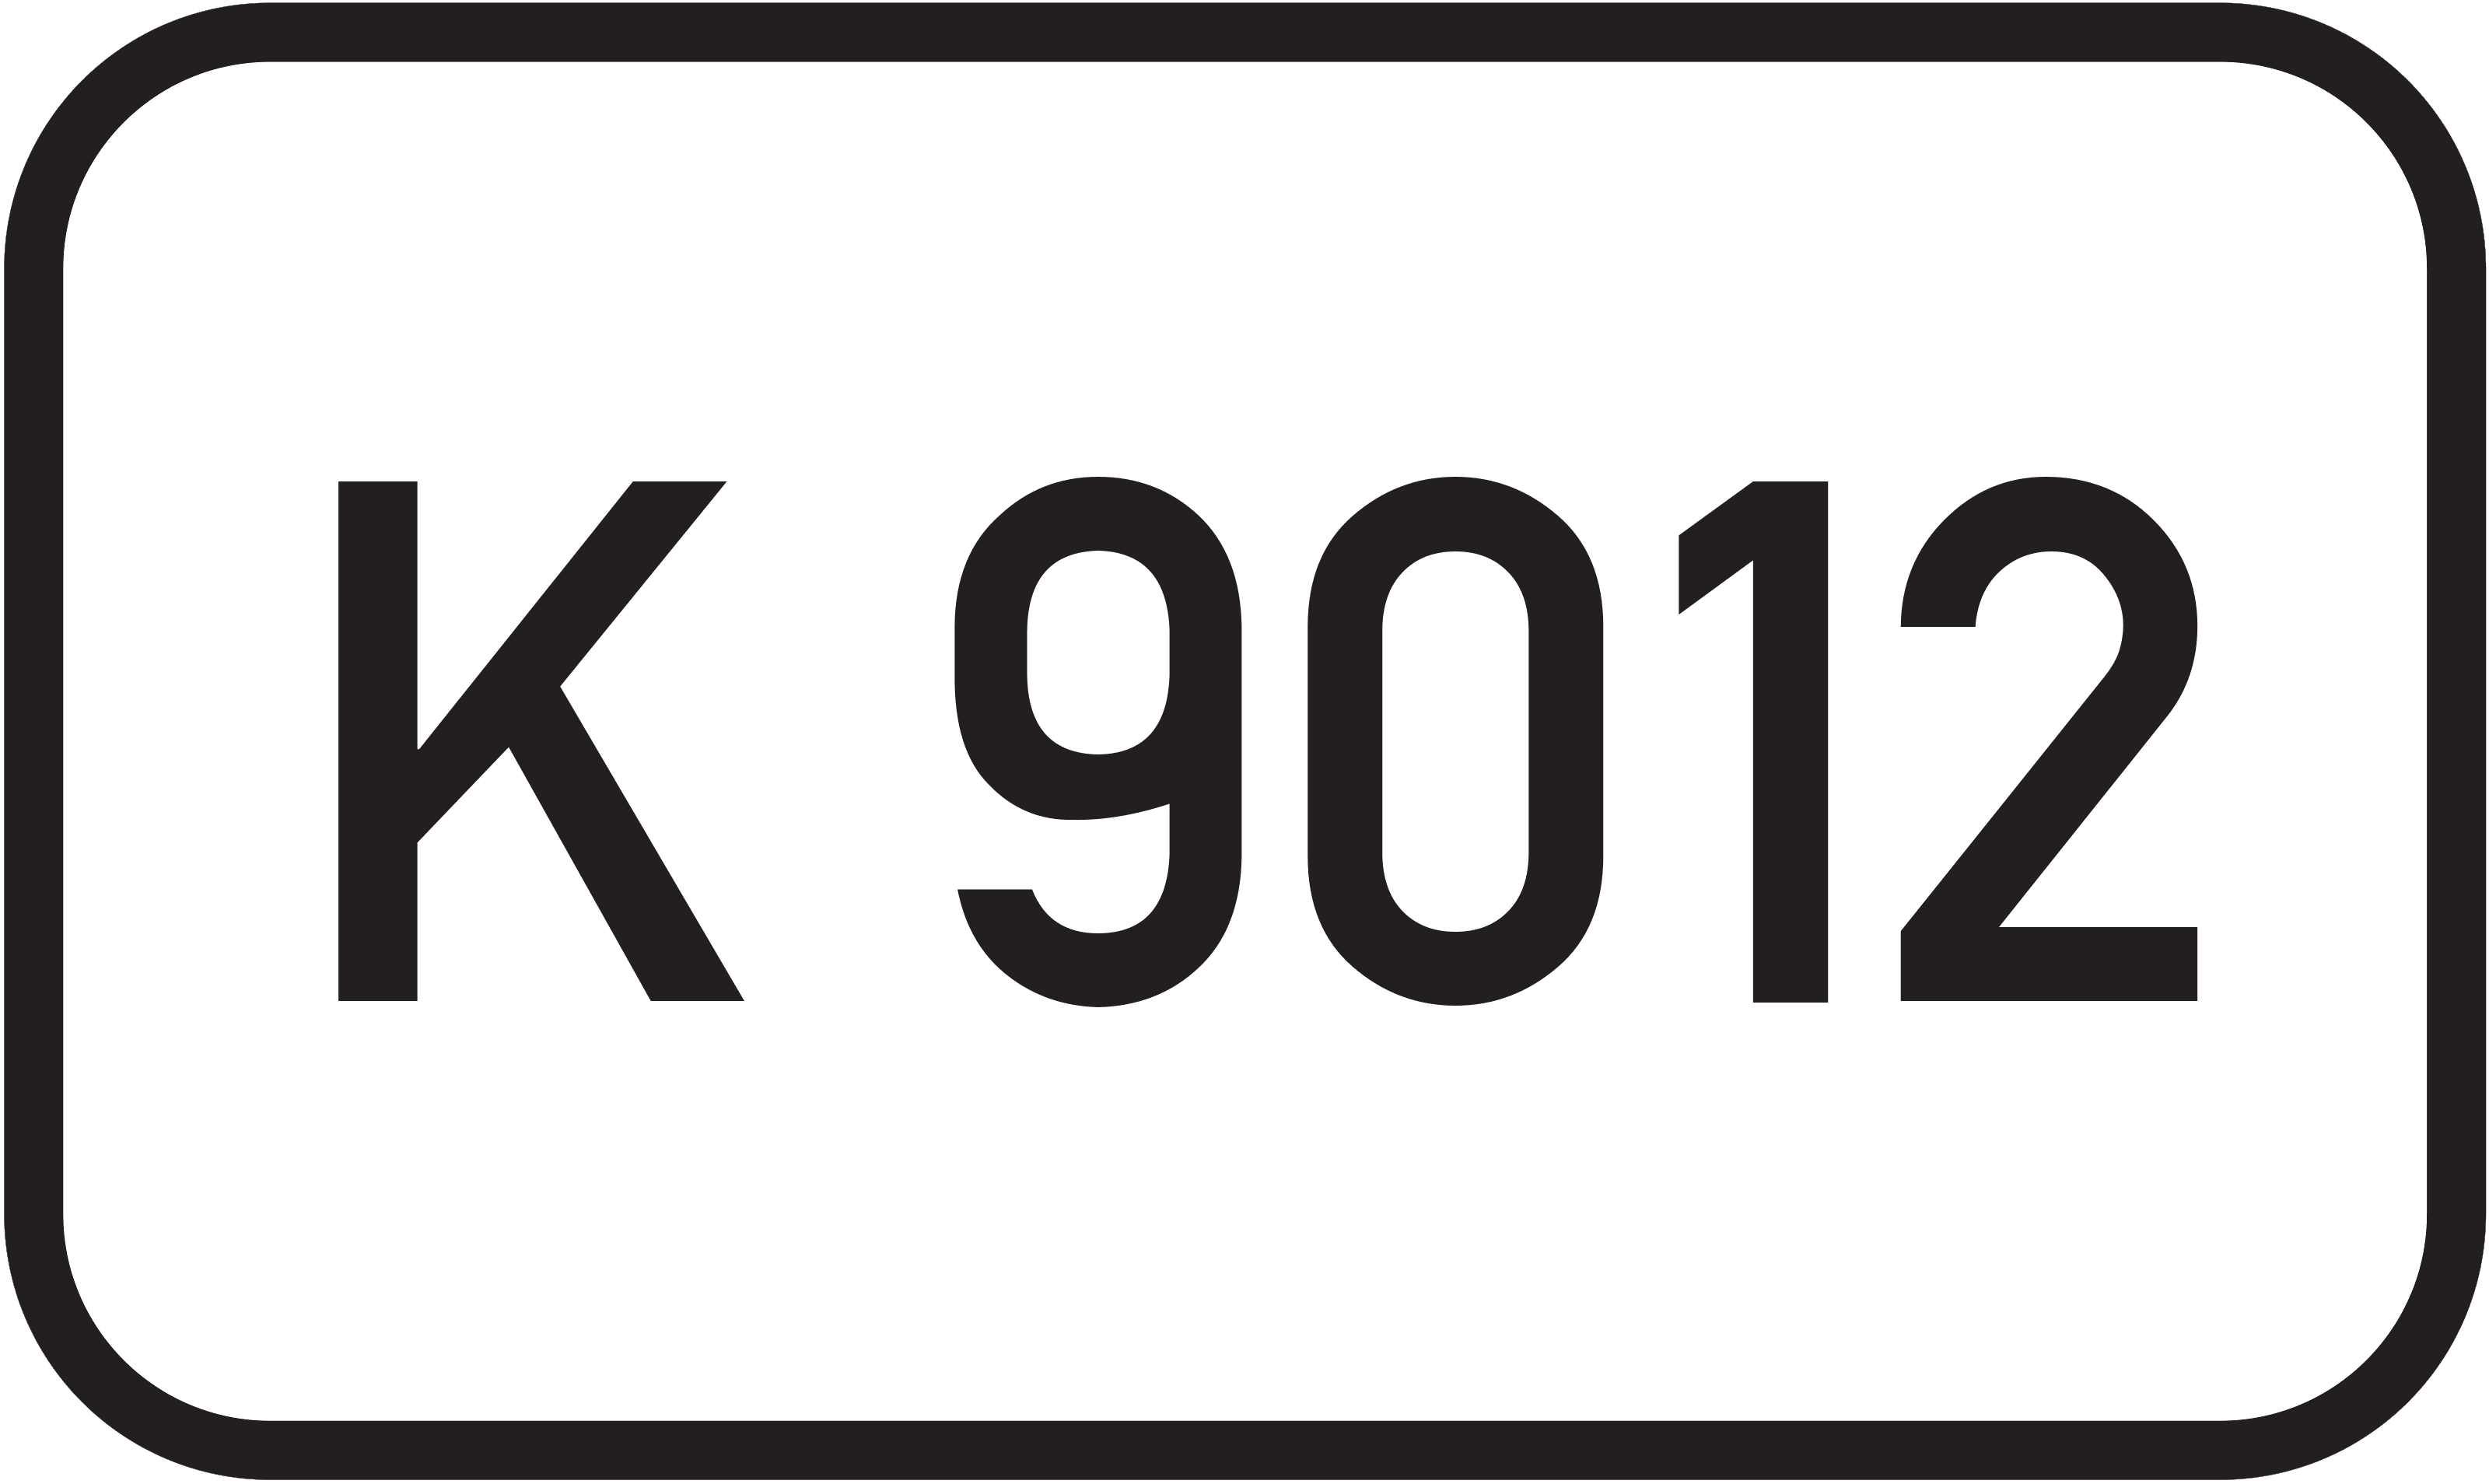 Bundesstraße K 9012